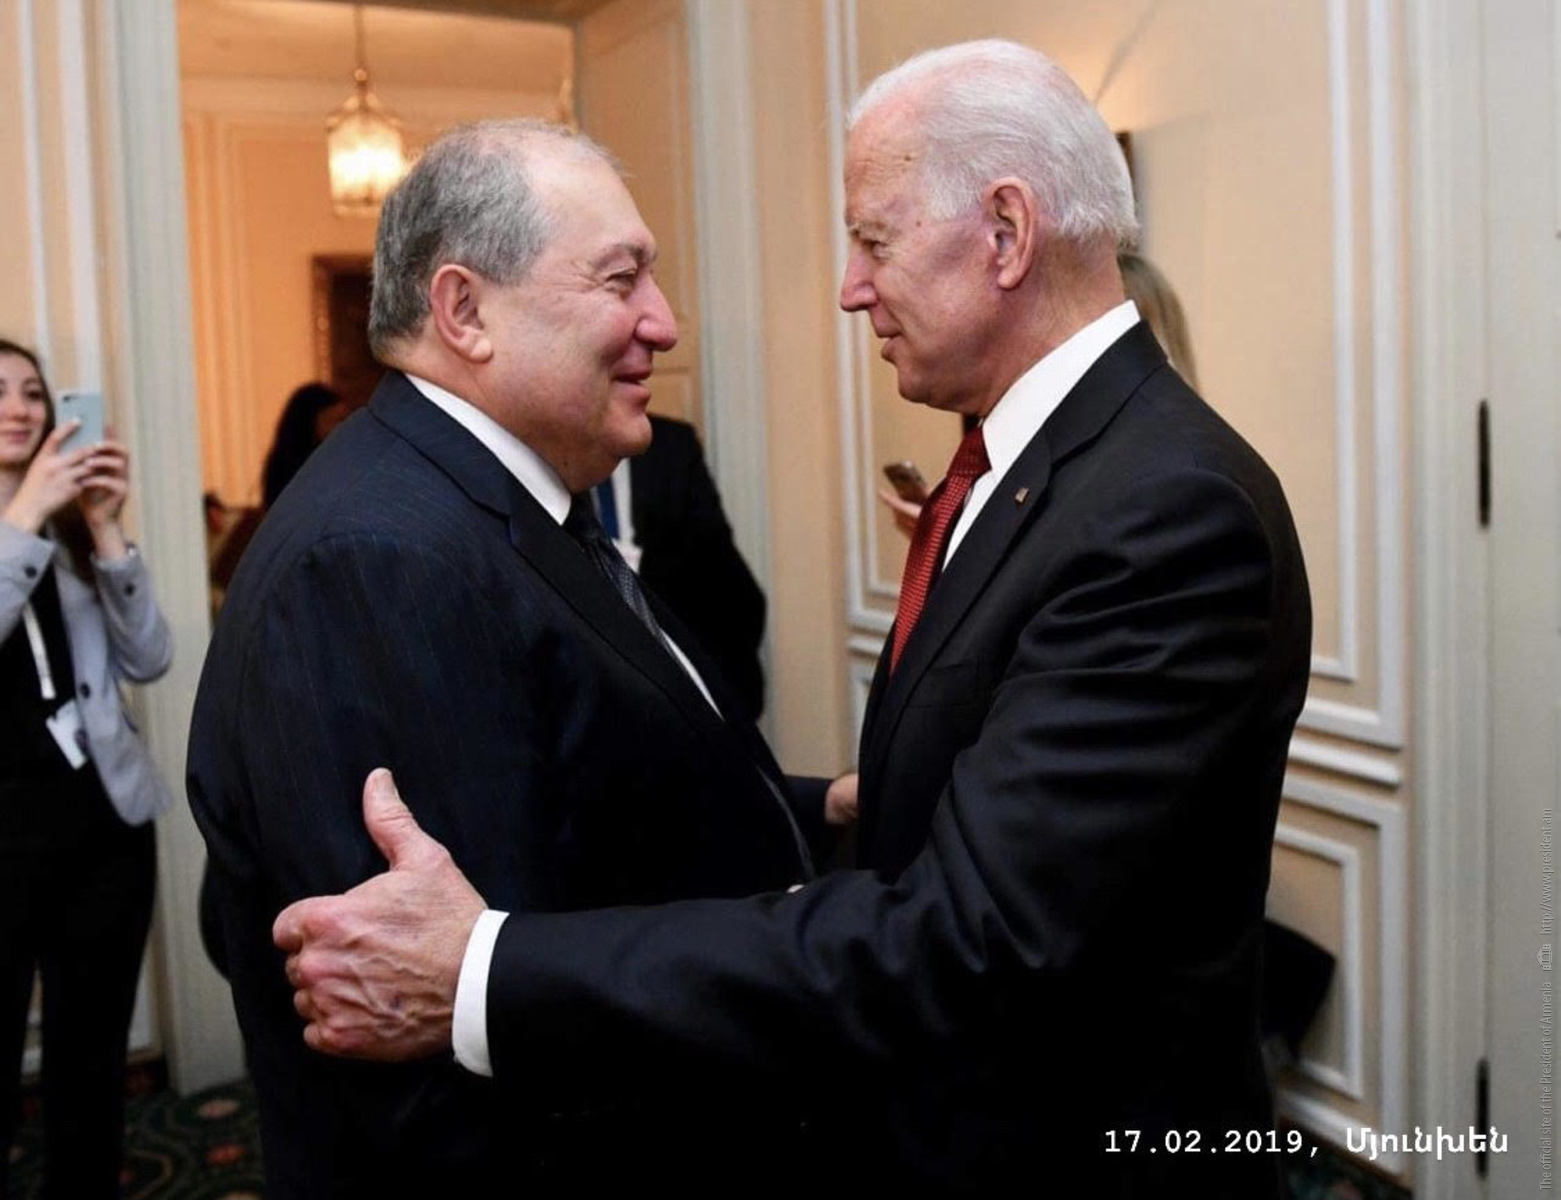 Ակնկալում եմ, որ մեր համագործակցությունն առաջ կմղի հայ-ամերիկյան բարեկամական հարաբերությունները. նախագահ Արմեն Սարգսյանը շնորհավորել է ԱՄՆ նախագահ Ջո Բայդենին